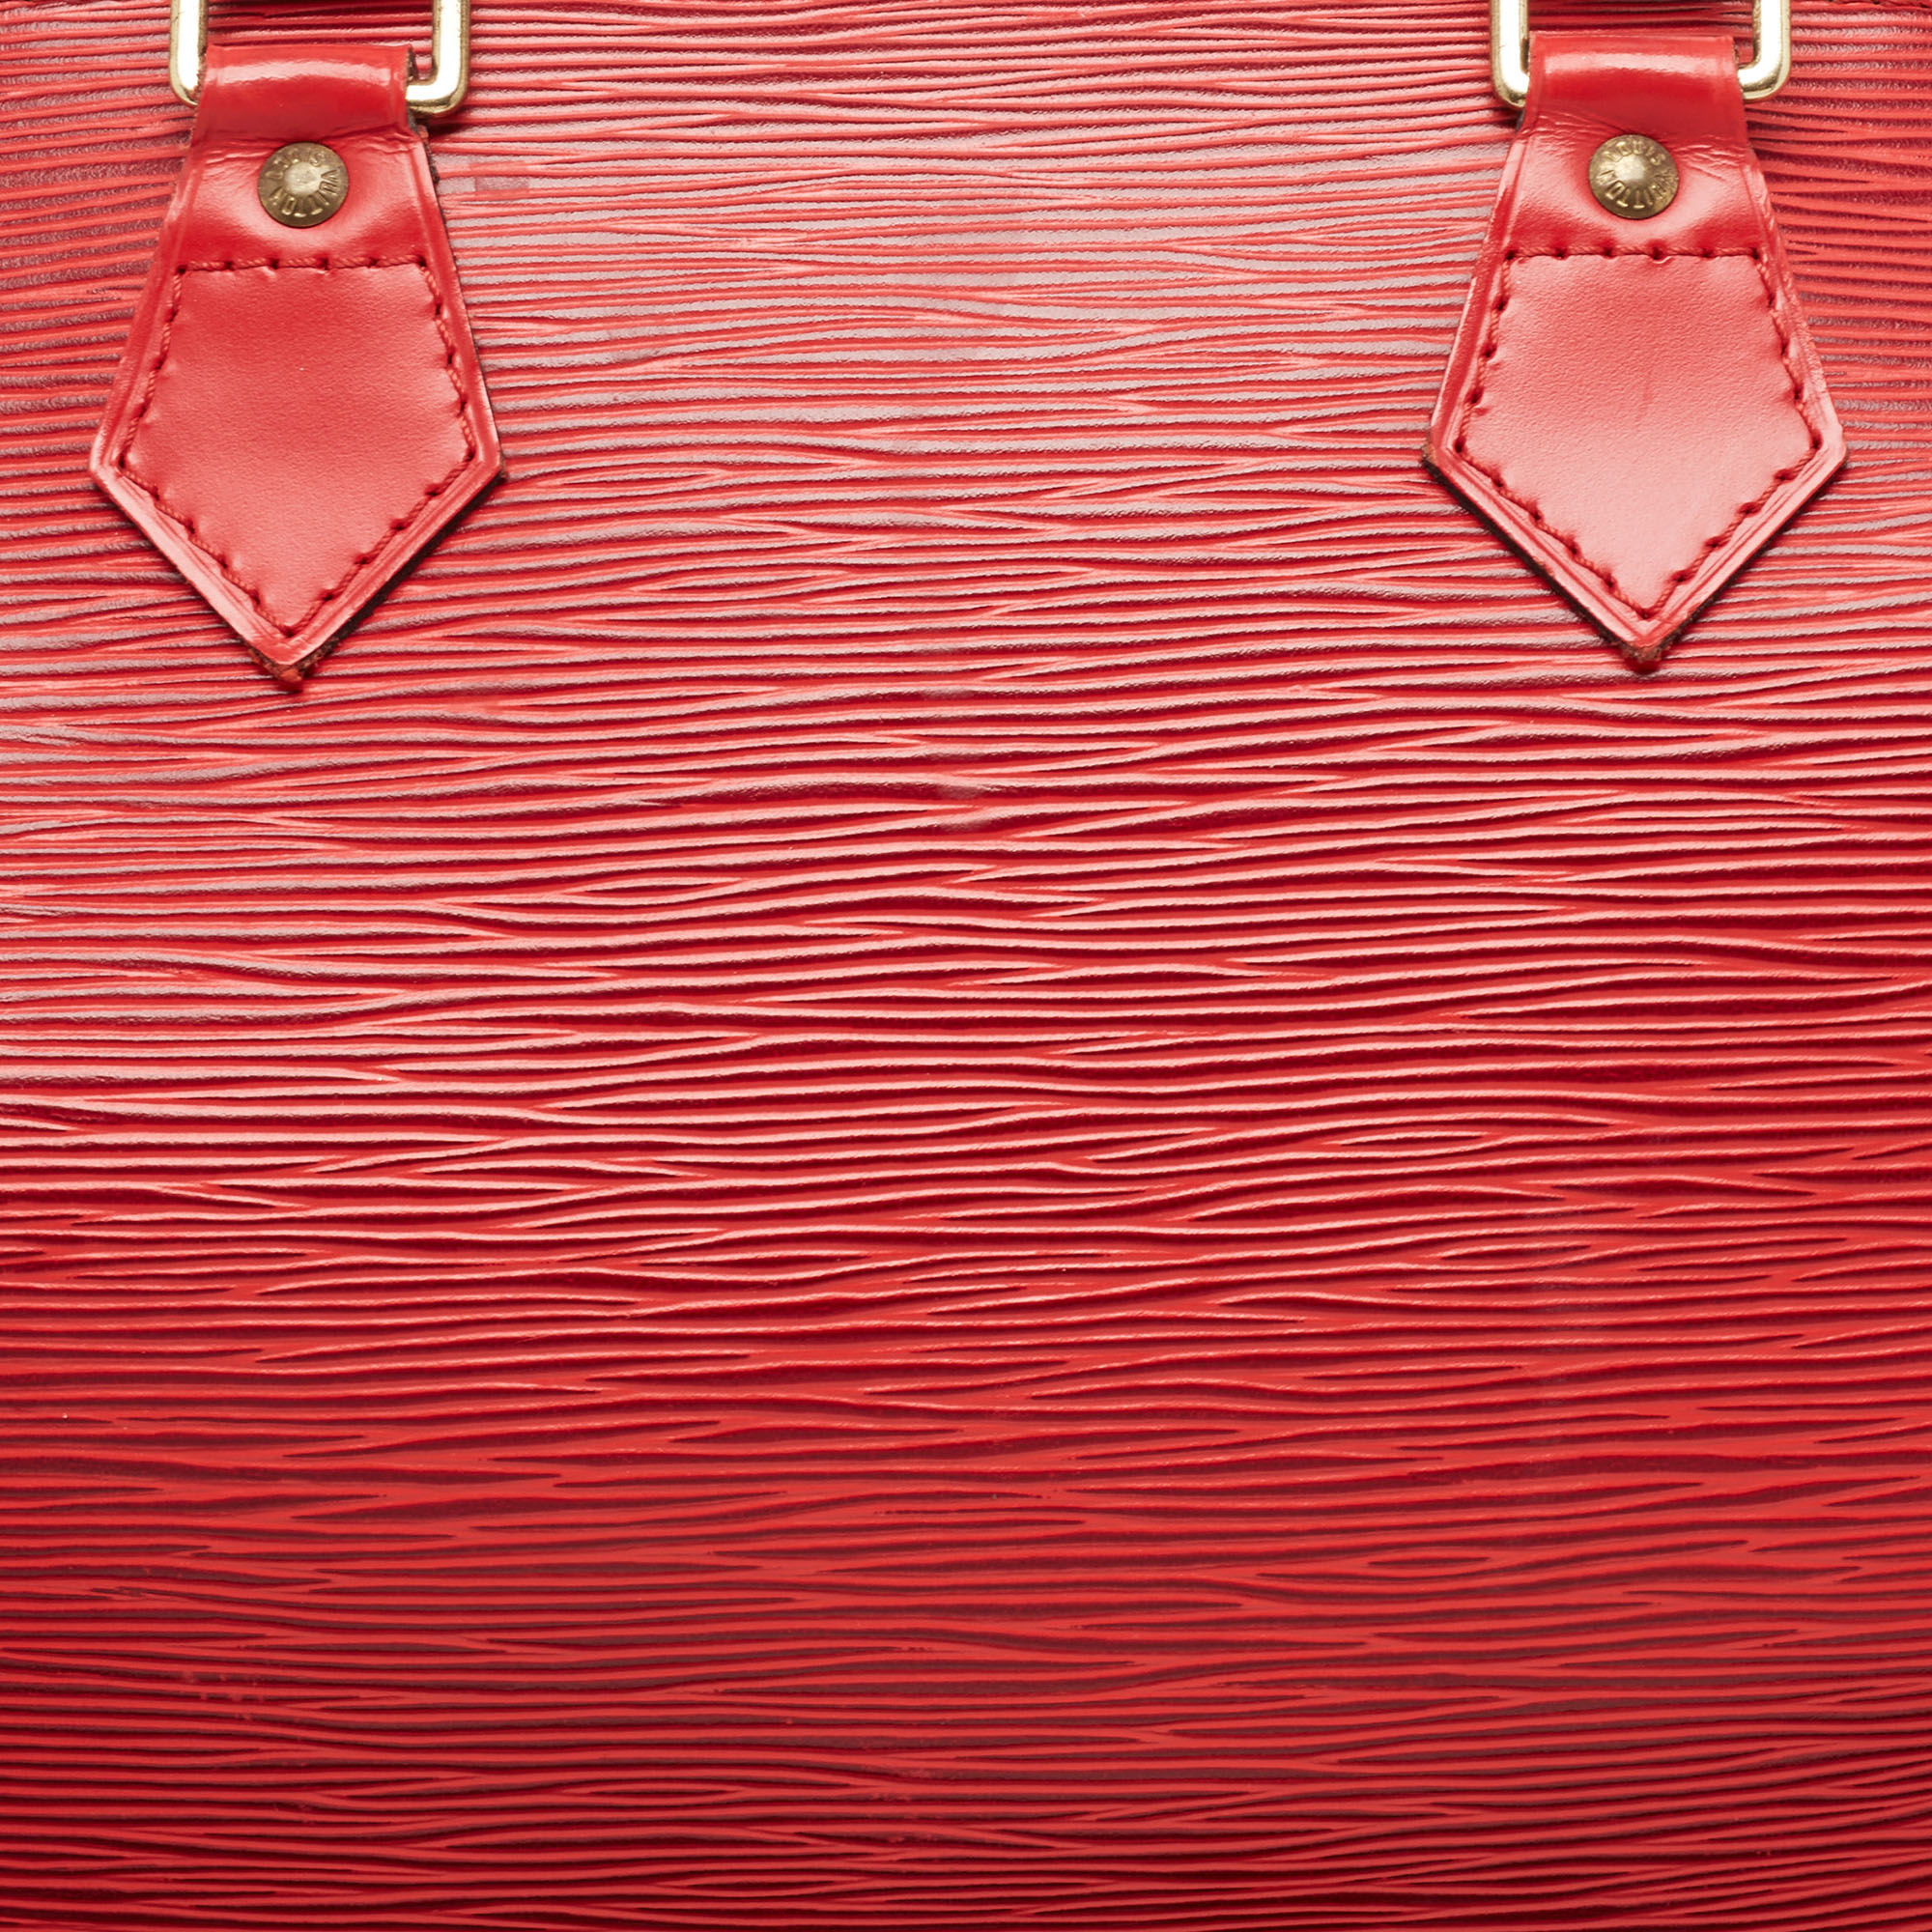 Louis Vuitton Red Epi Leather Speedy 30 Bag